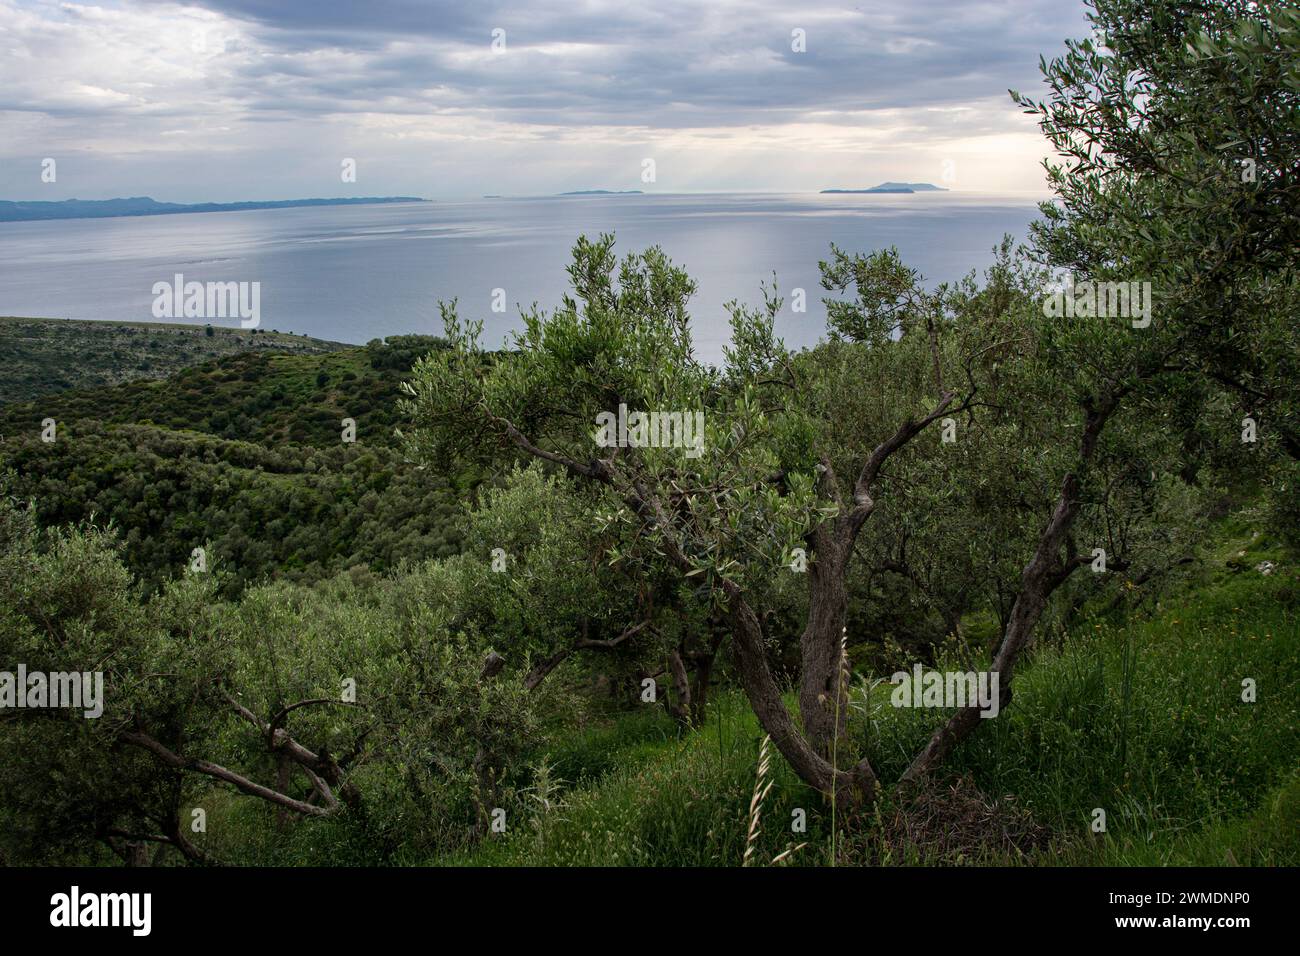 Blick von der albanischen Südküste auf Korfu und die umliegenden griechischen Inseln Foto Stock